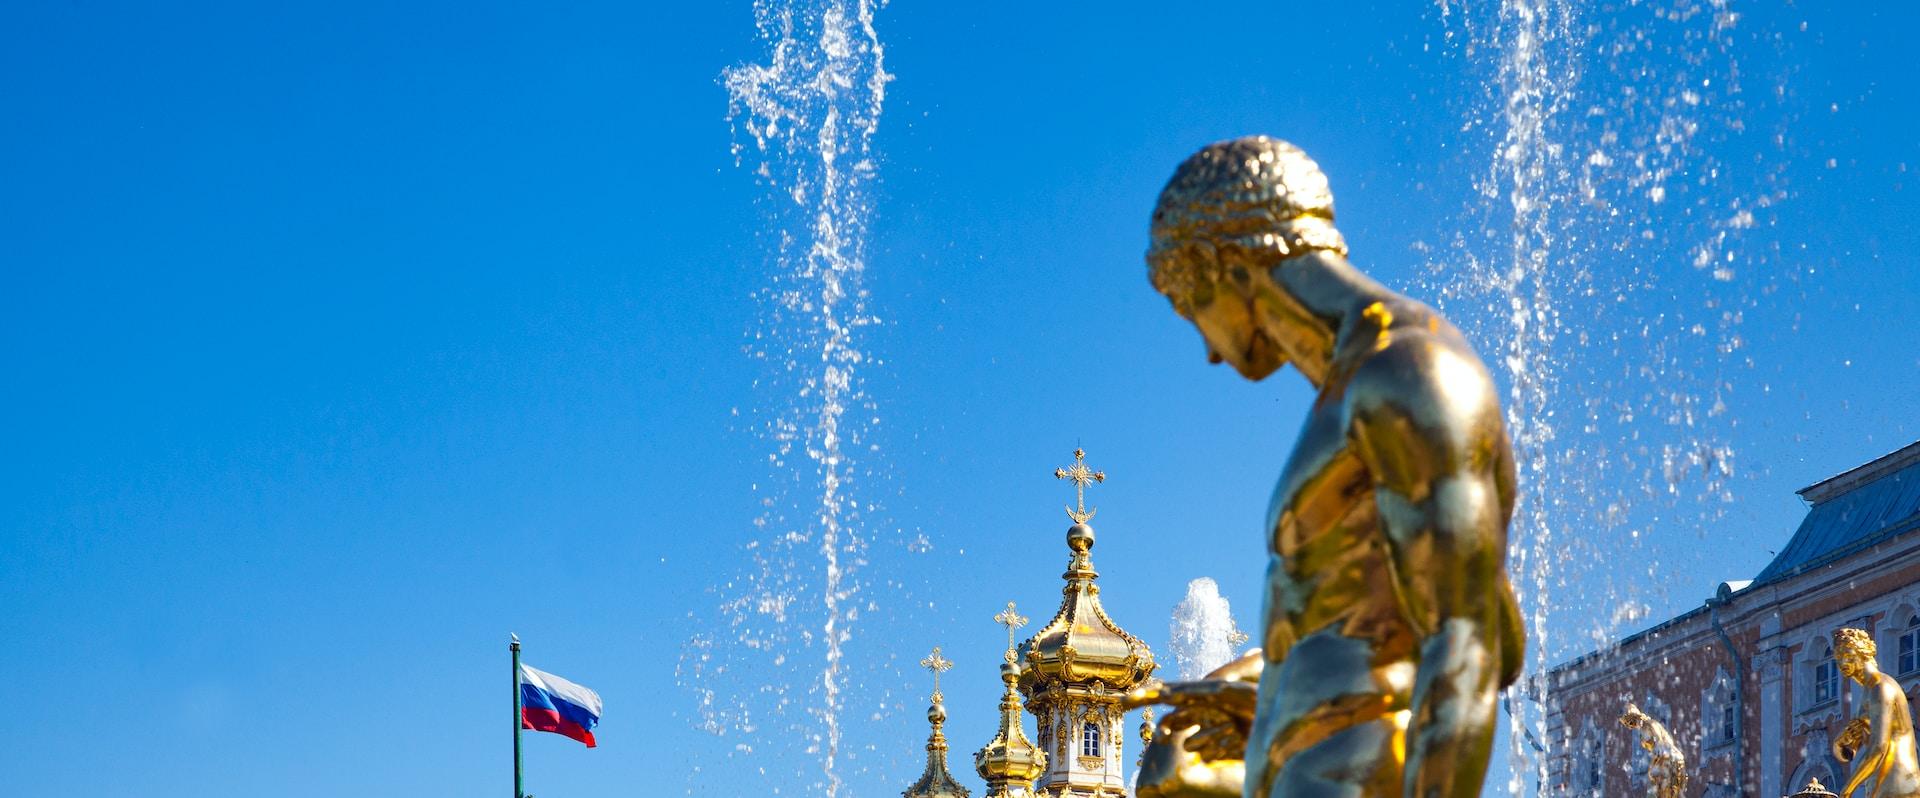 Большая экскурсия «Петергоф максимум: Большой дворец, фонтаны, малый дворец» со скидкой 35%